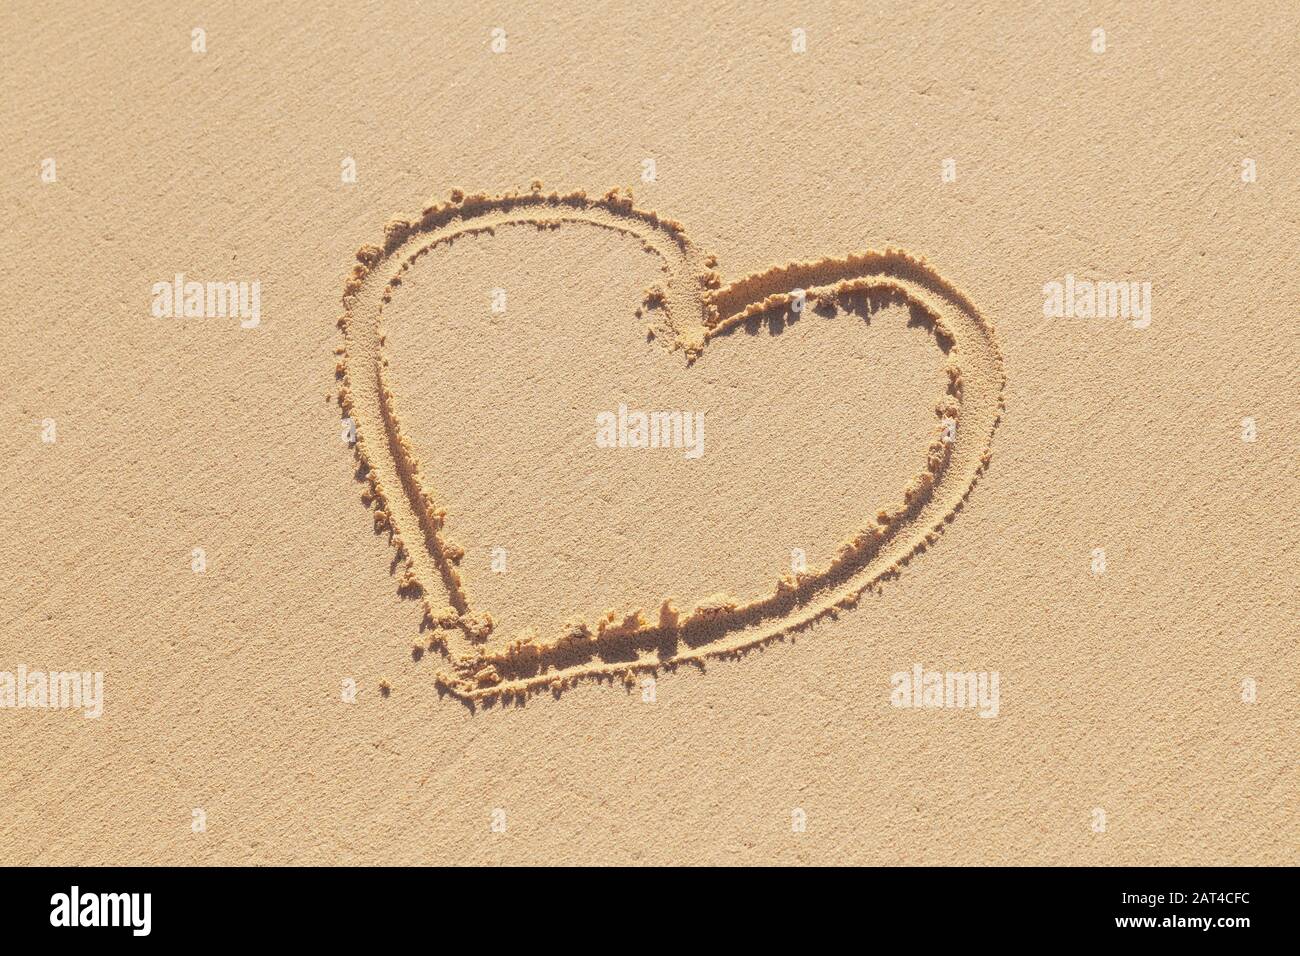 El signo de corazón dibujado a mano está en una arena costera, una metáfora romántica del día de fiesta Foto de stock